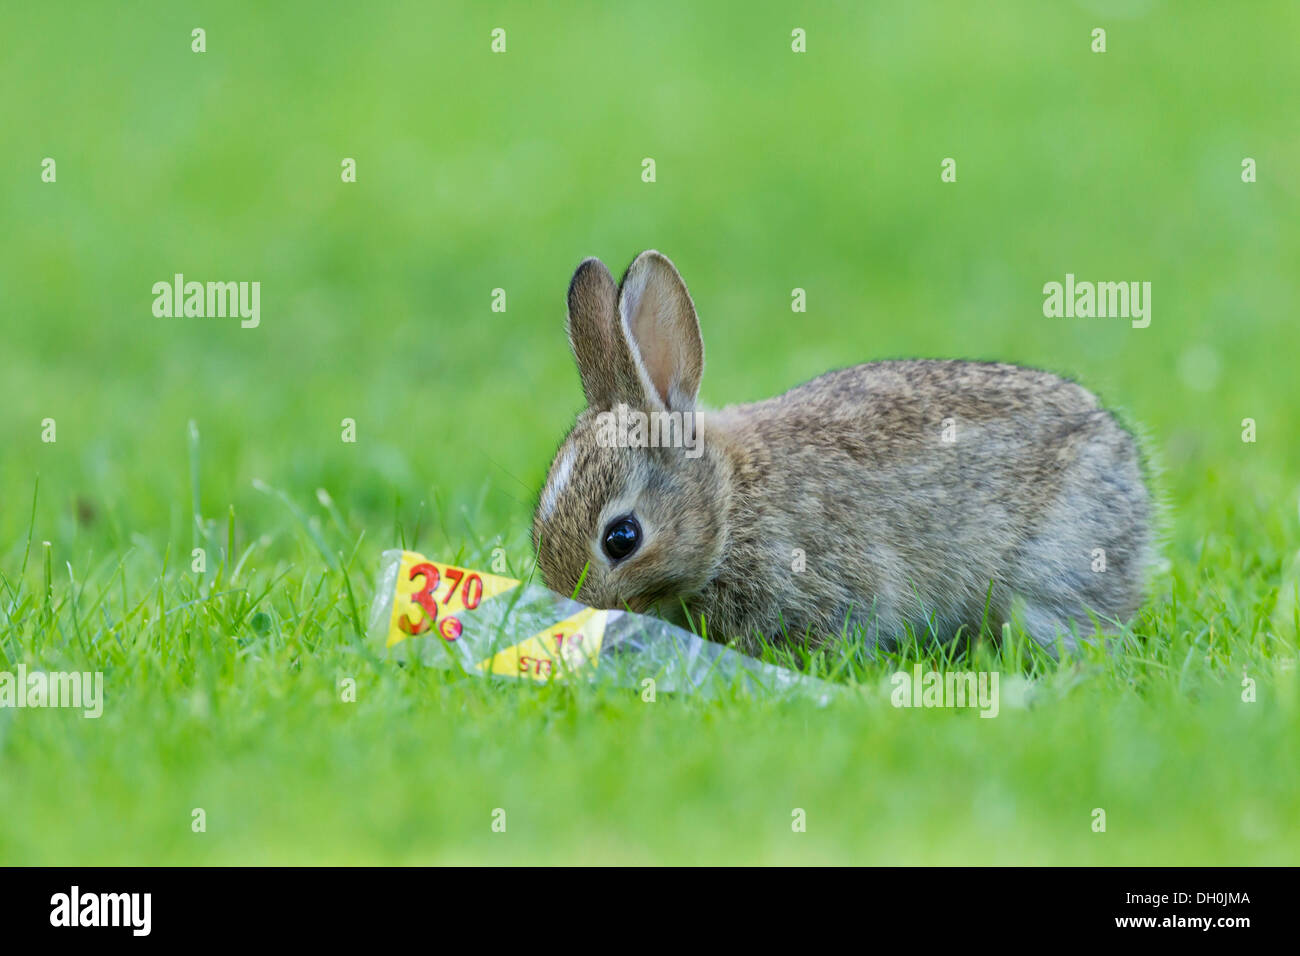 European rabbit or common rabbit (Oryctolagus cuniculus) on grass, Schleswig-Holstein Stock Photo